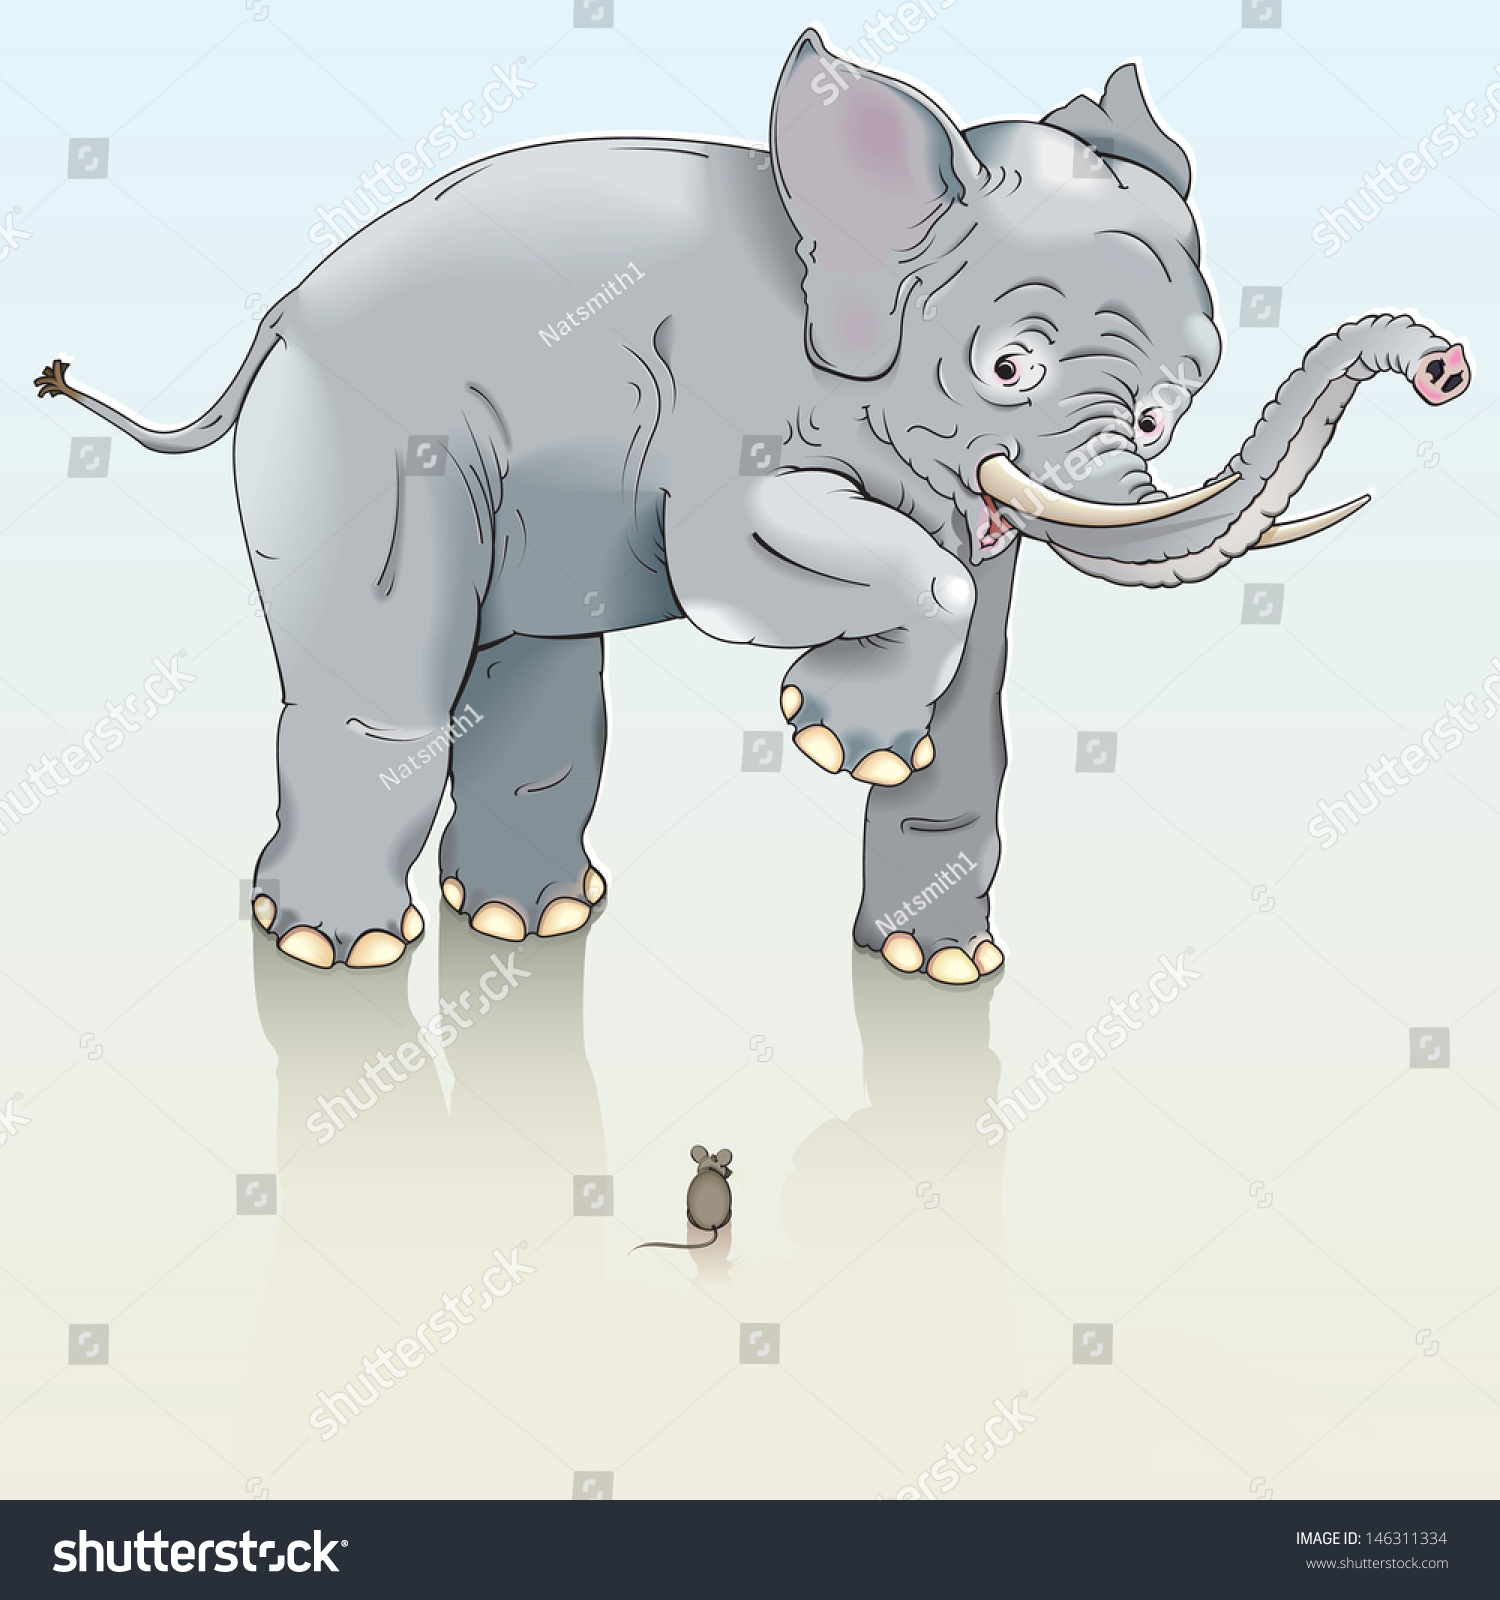 Слон и мышка